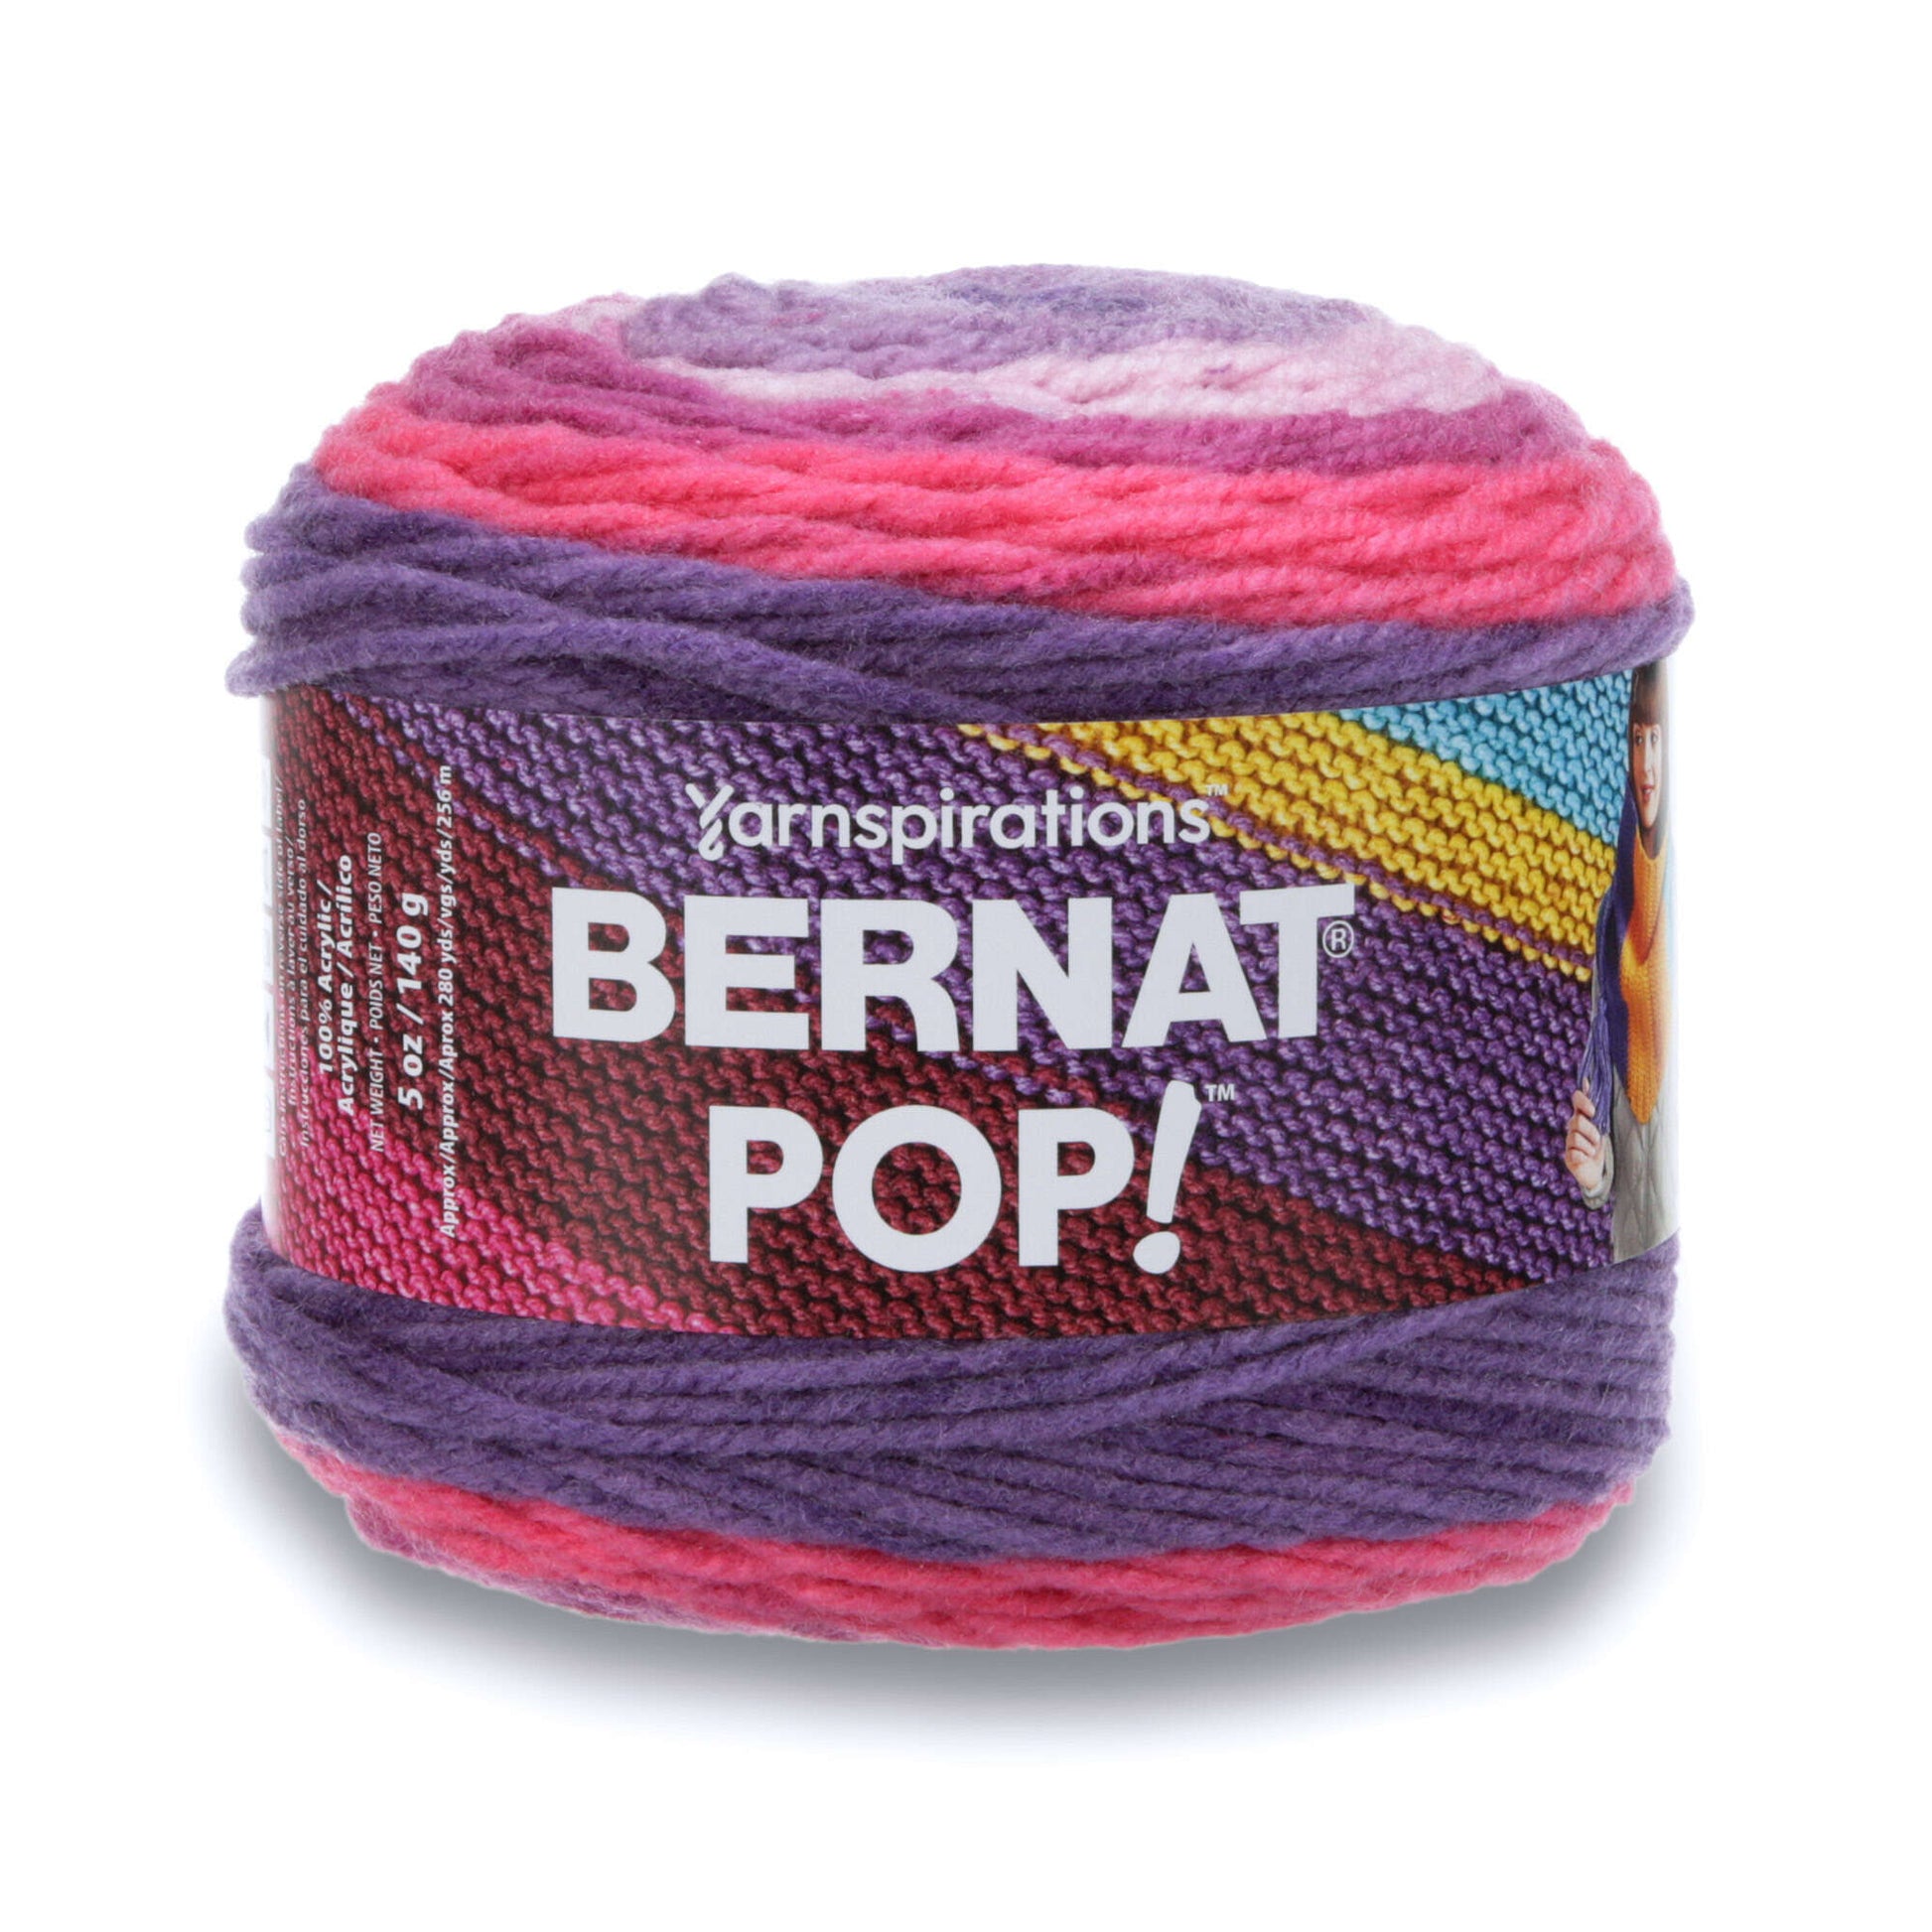 Bernat Pop! Yarn - Clearance Shades Violet Vision